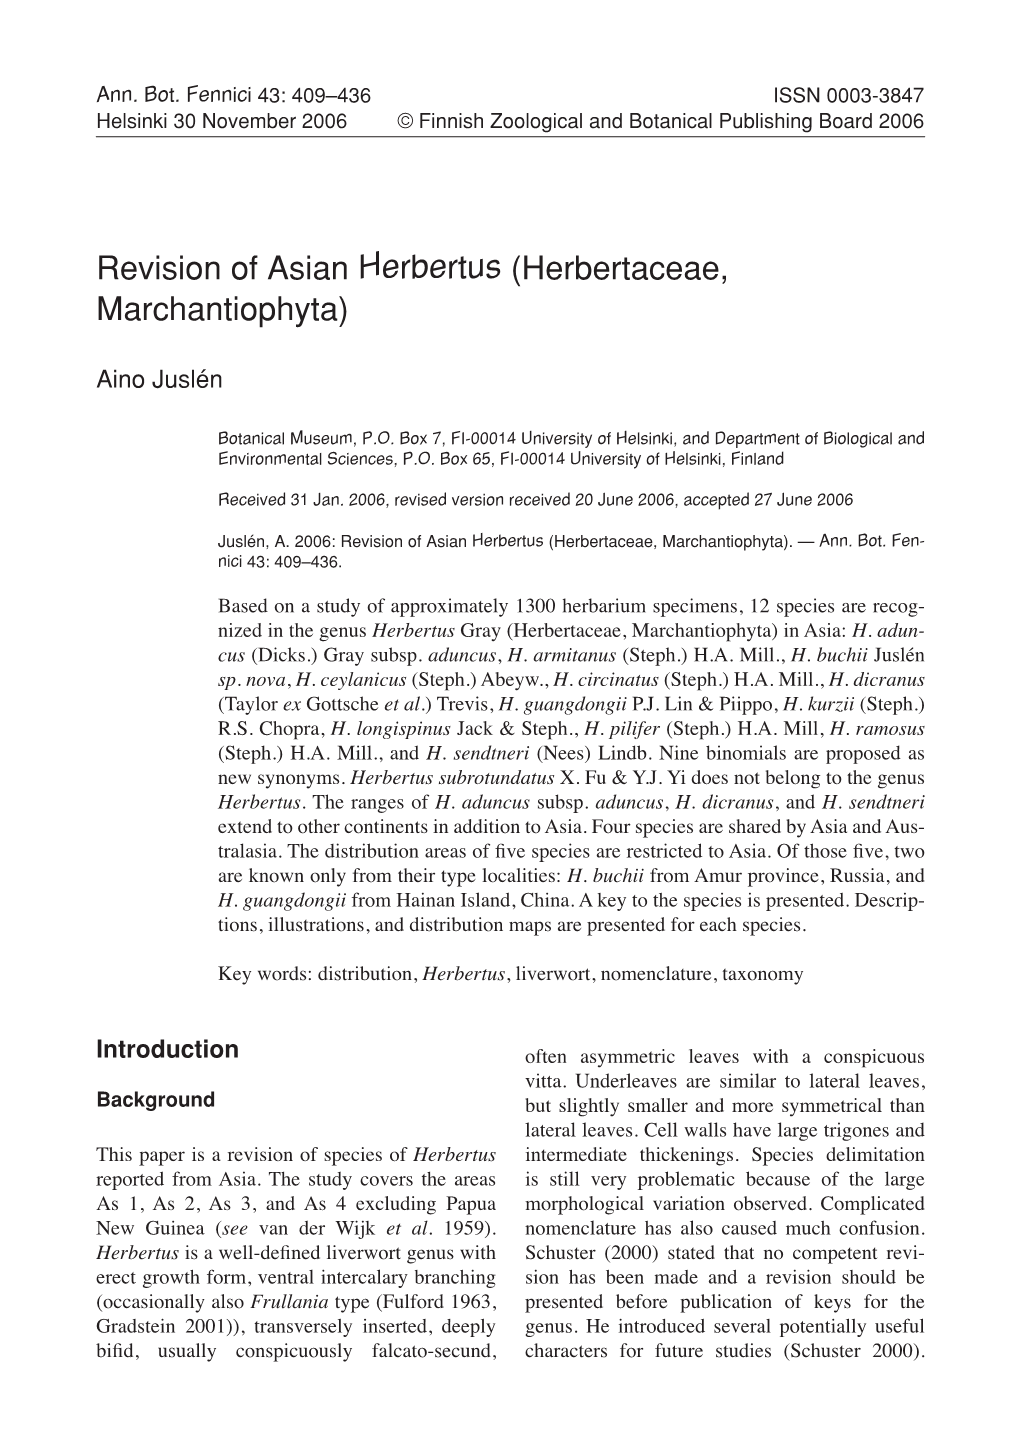 Revision of Asian Herbertus (Herbertaceae, Marchantiophyta)